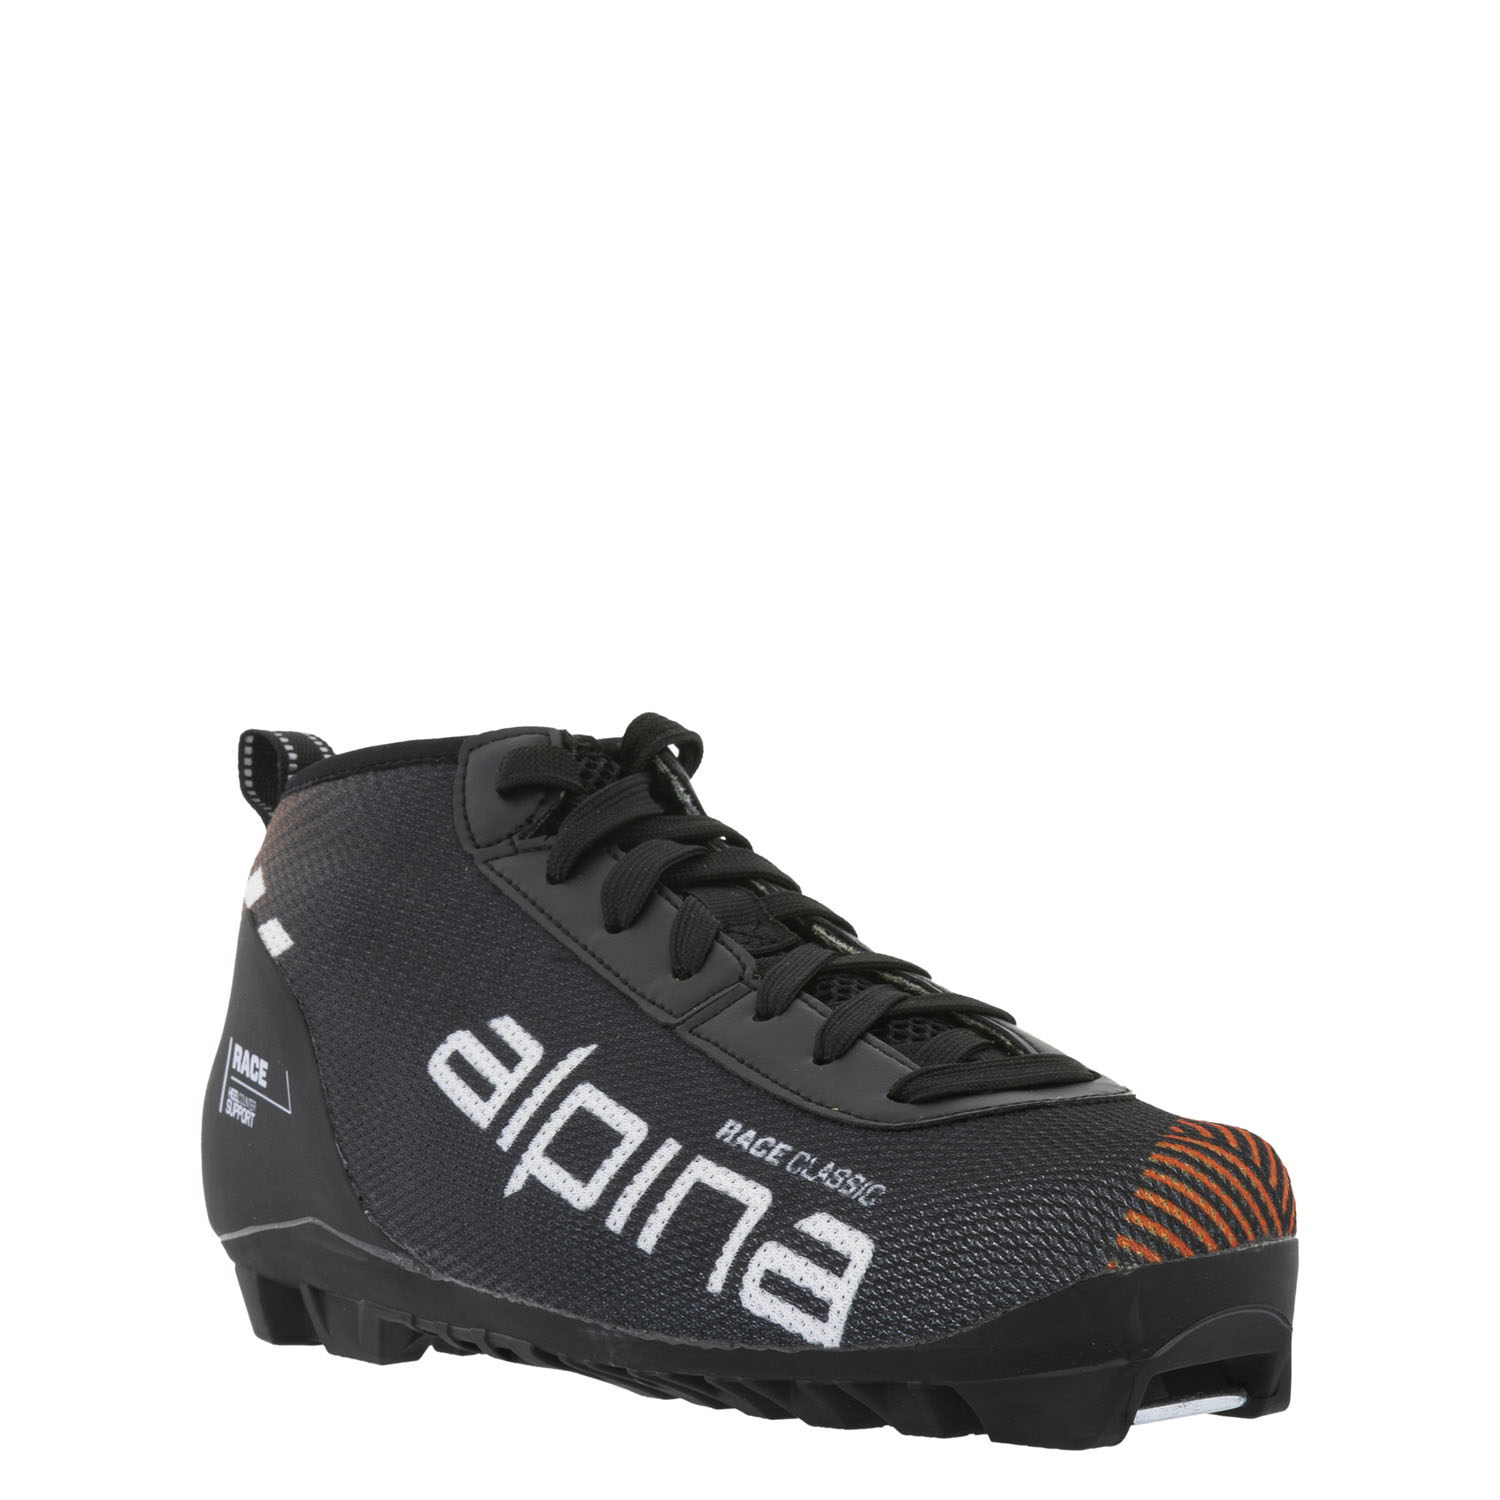 ALPINA Лыжероллерные ботинки RACE CL SM Артикул: 5350-1